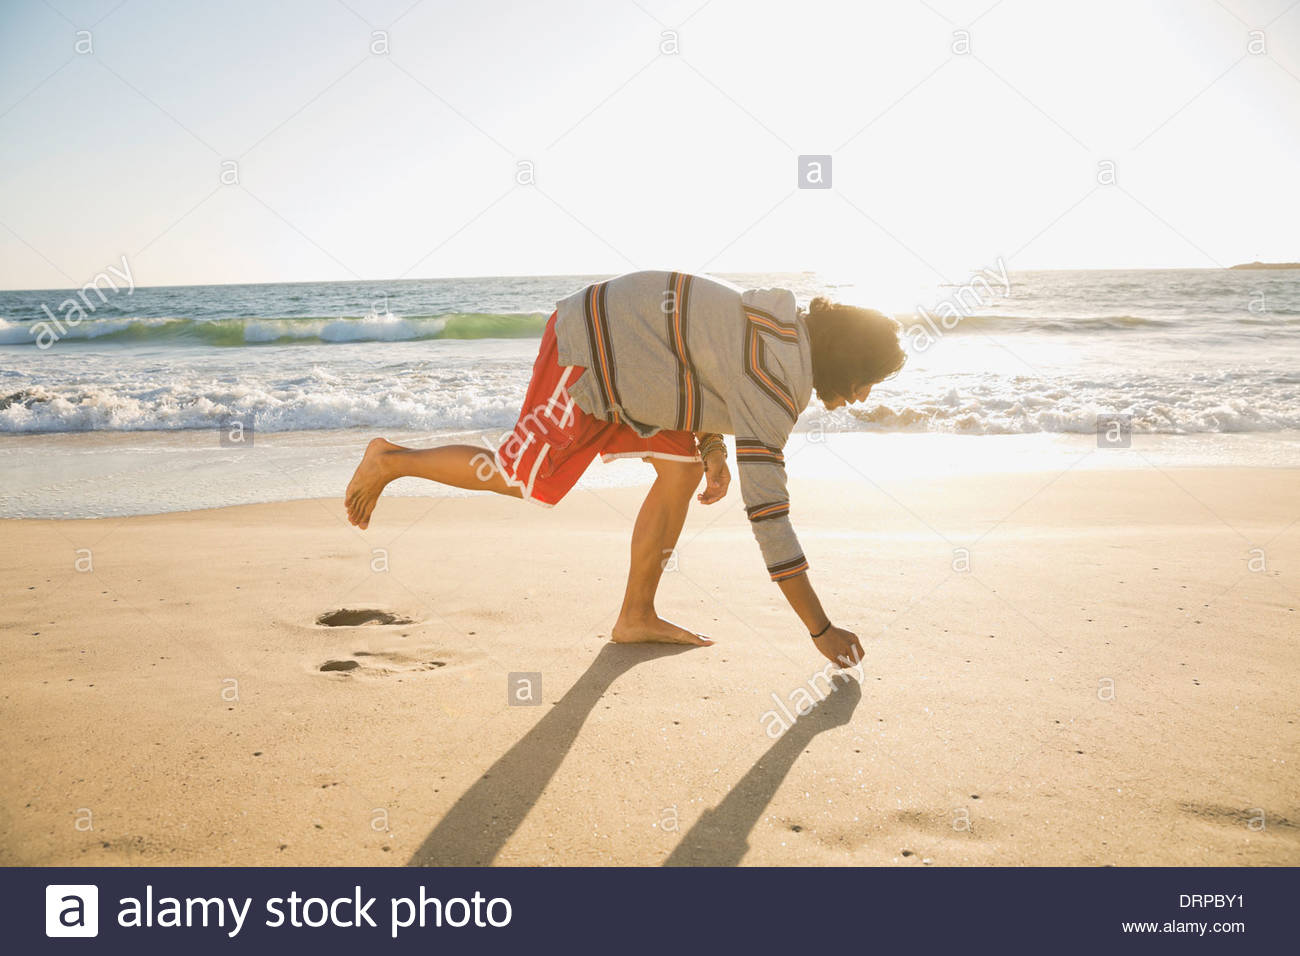 Man picking up shells at beach Stock Photo